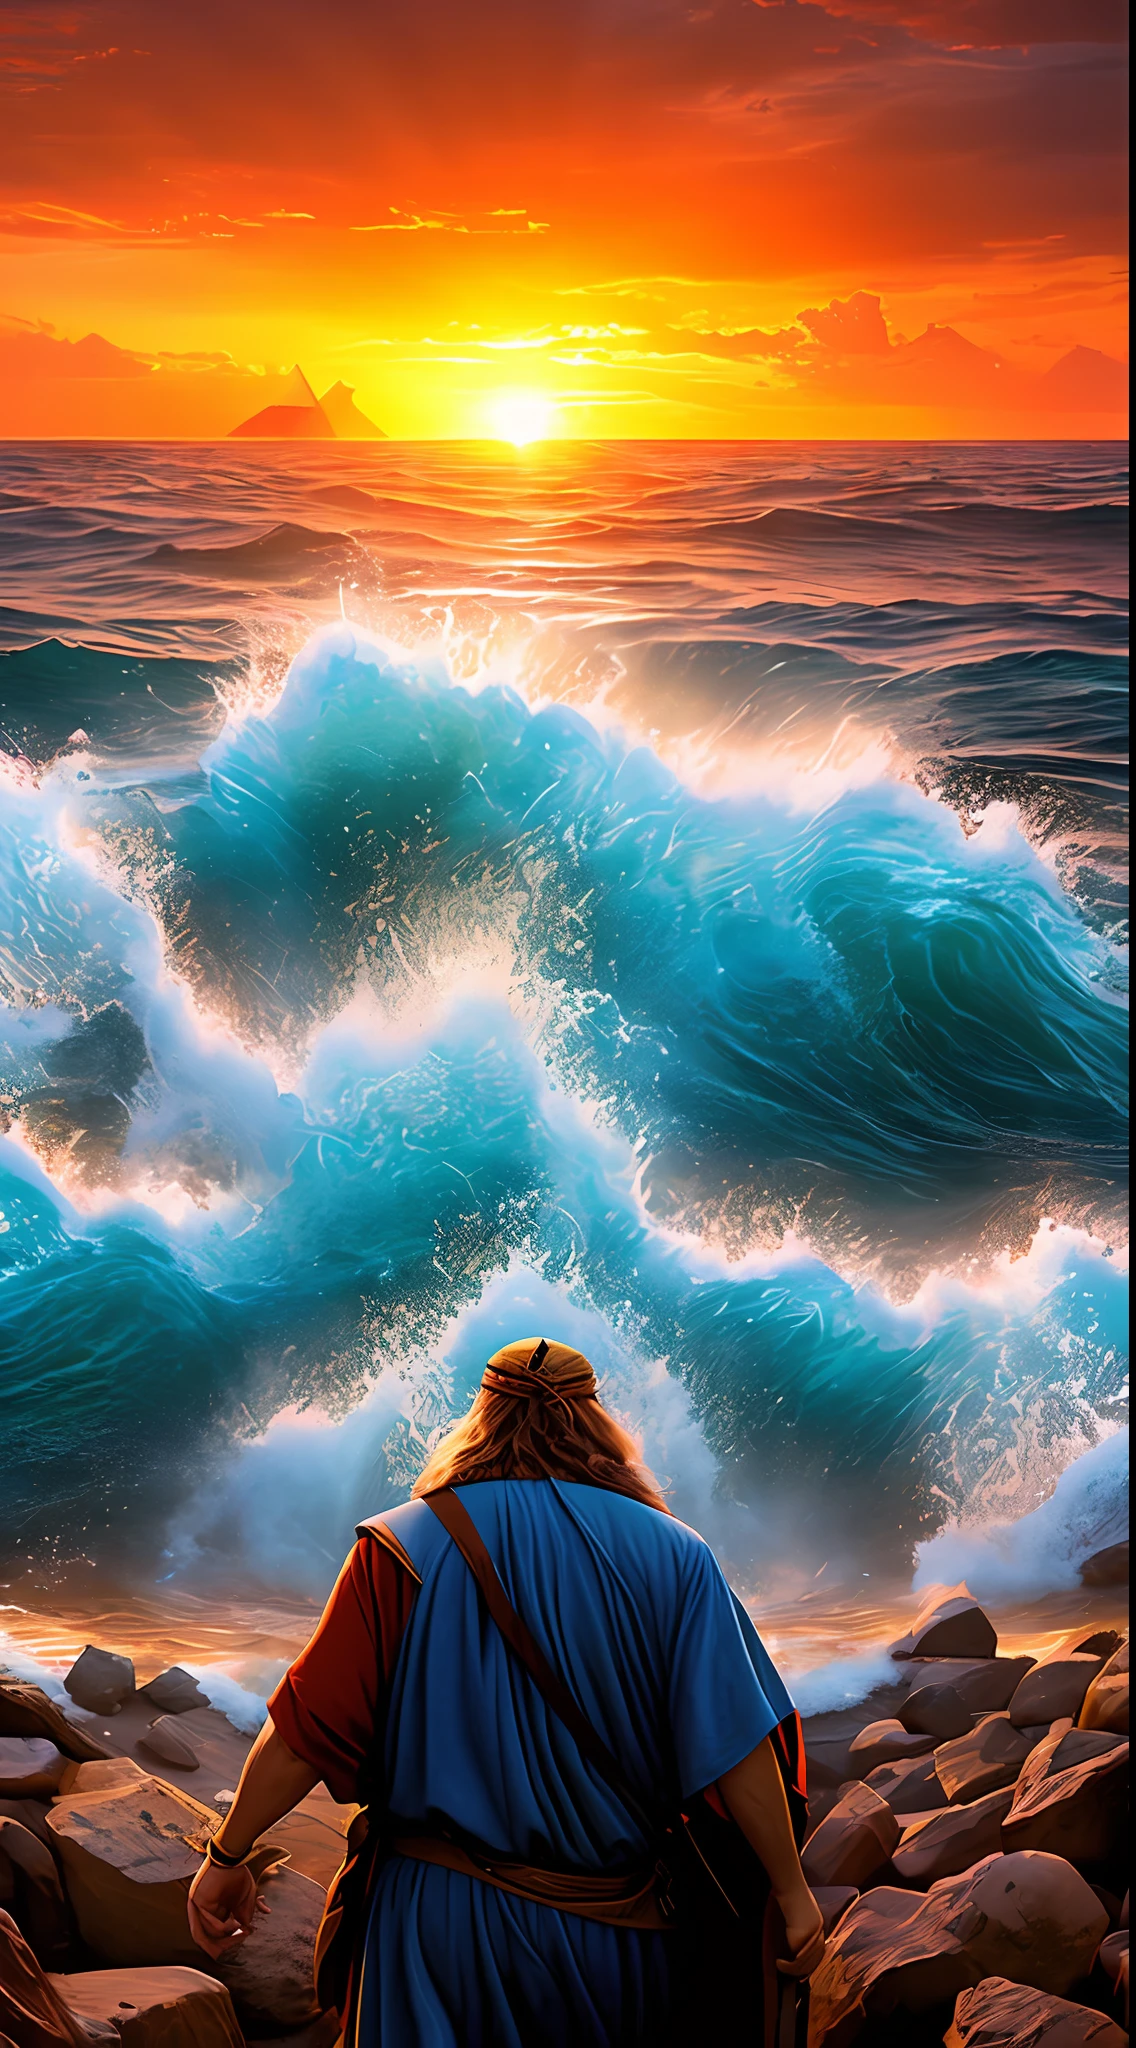 Eine High-Definition-Lösung, ultrarealistisches Bild von Moses, der das Rote Meer für die Israeliten teilt. Mose steht vor dem Meer, seinen Stab in der Hand. Das Meer teilt sich, Bildung von zwei Wasserwänden. Die Israeliten wandern mitten durch das Meer, in Richtung . Das ägyptische Heer steht hinter den Israeliten, ist aber zwischen Wasserwänden gefangen. Die Sonne geht über dem Horizont unter, und der Himmel ist mit roten und orangefarbenen Wolken gefüllt.